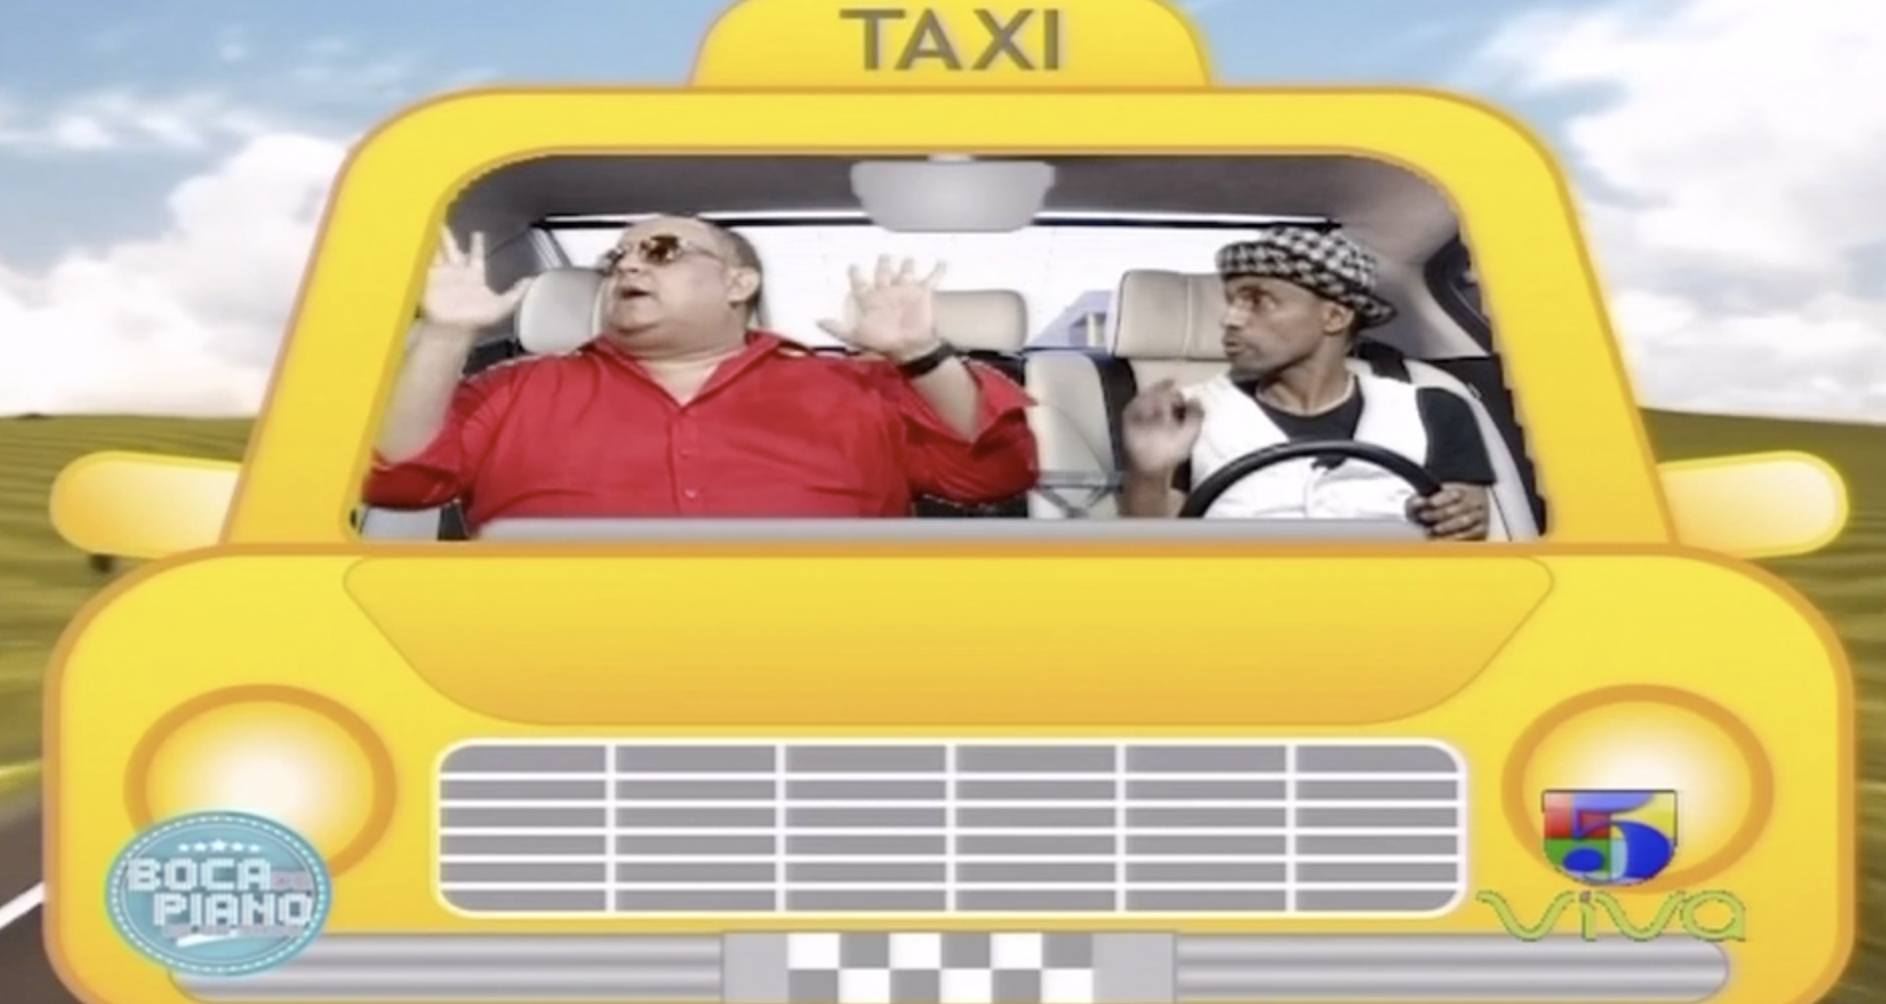 Boca De Piano Es Un Show: En El Taxi Con Peña Suazo